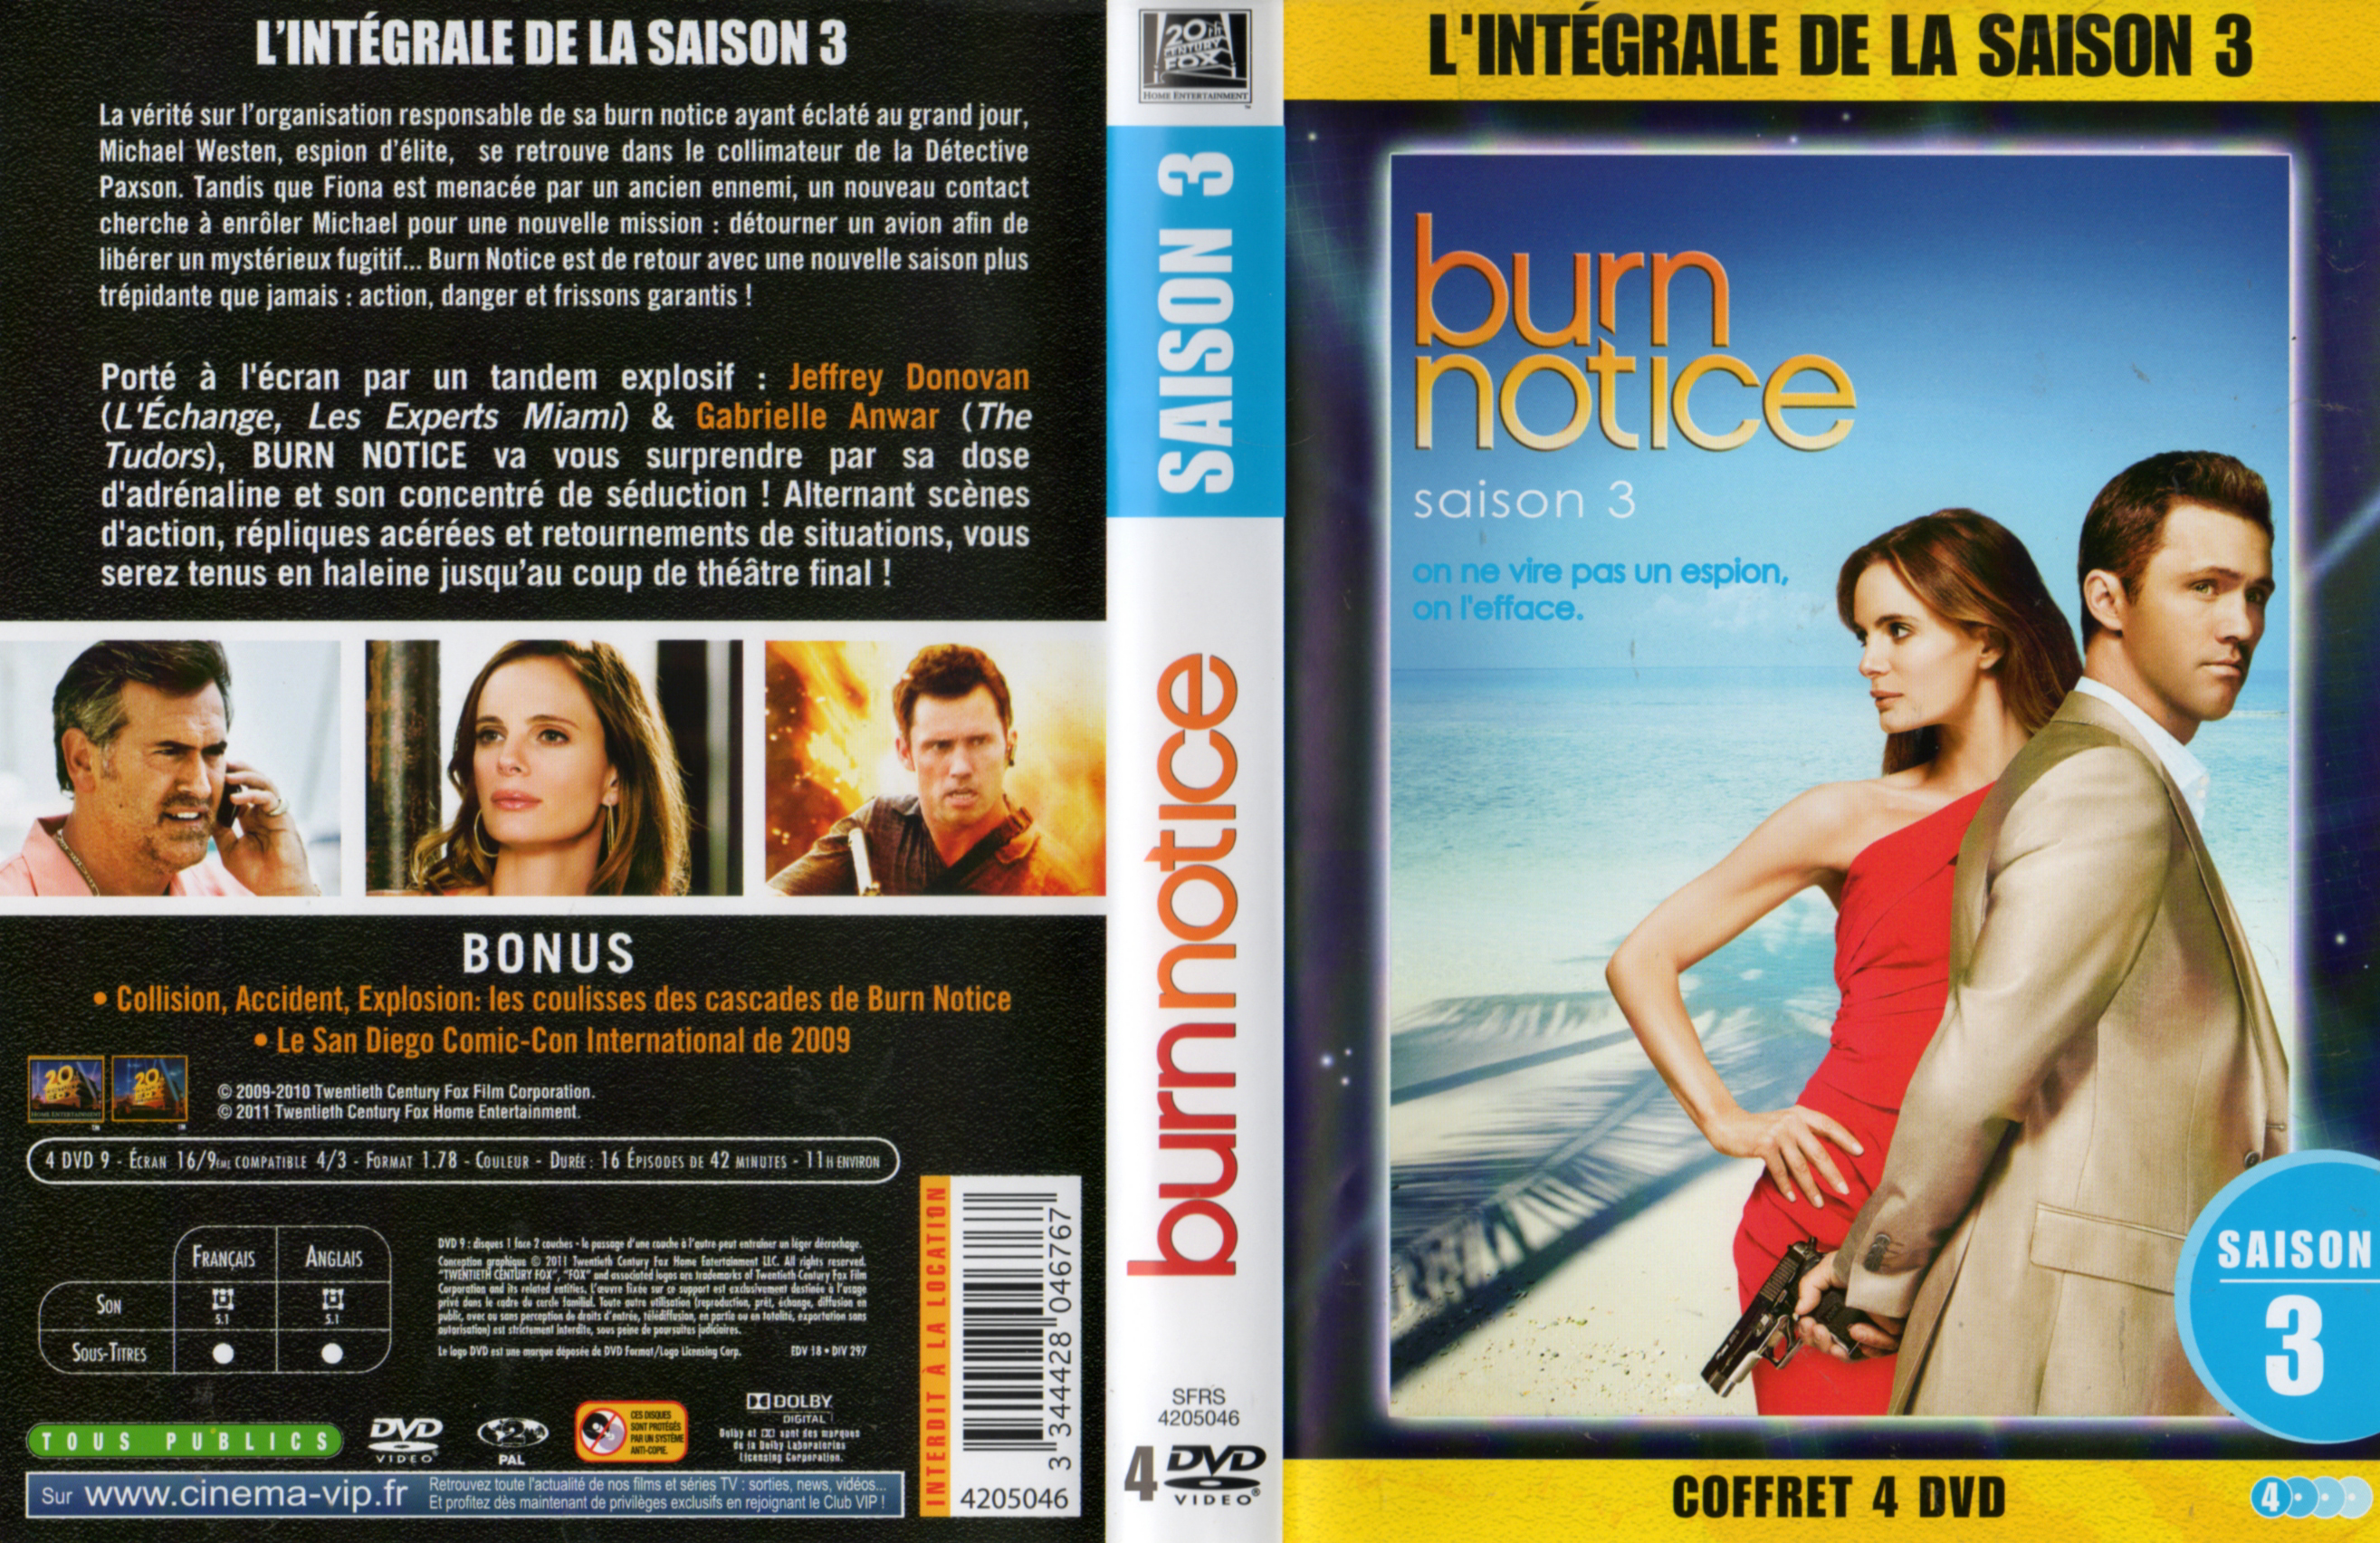 Jaquette DVD Burn notice saison 3 COFFRET